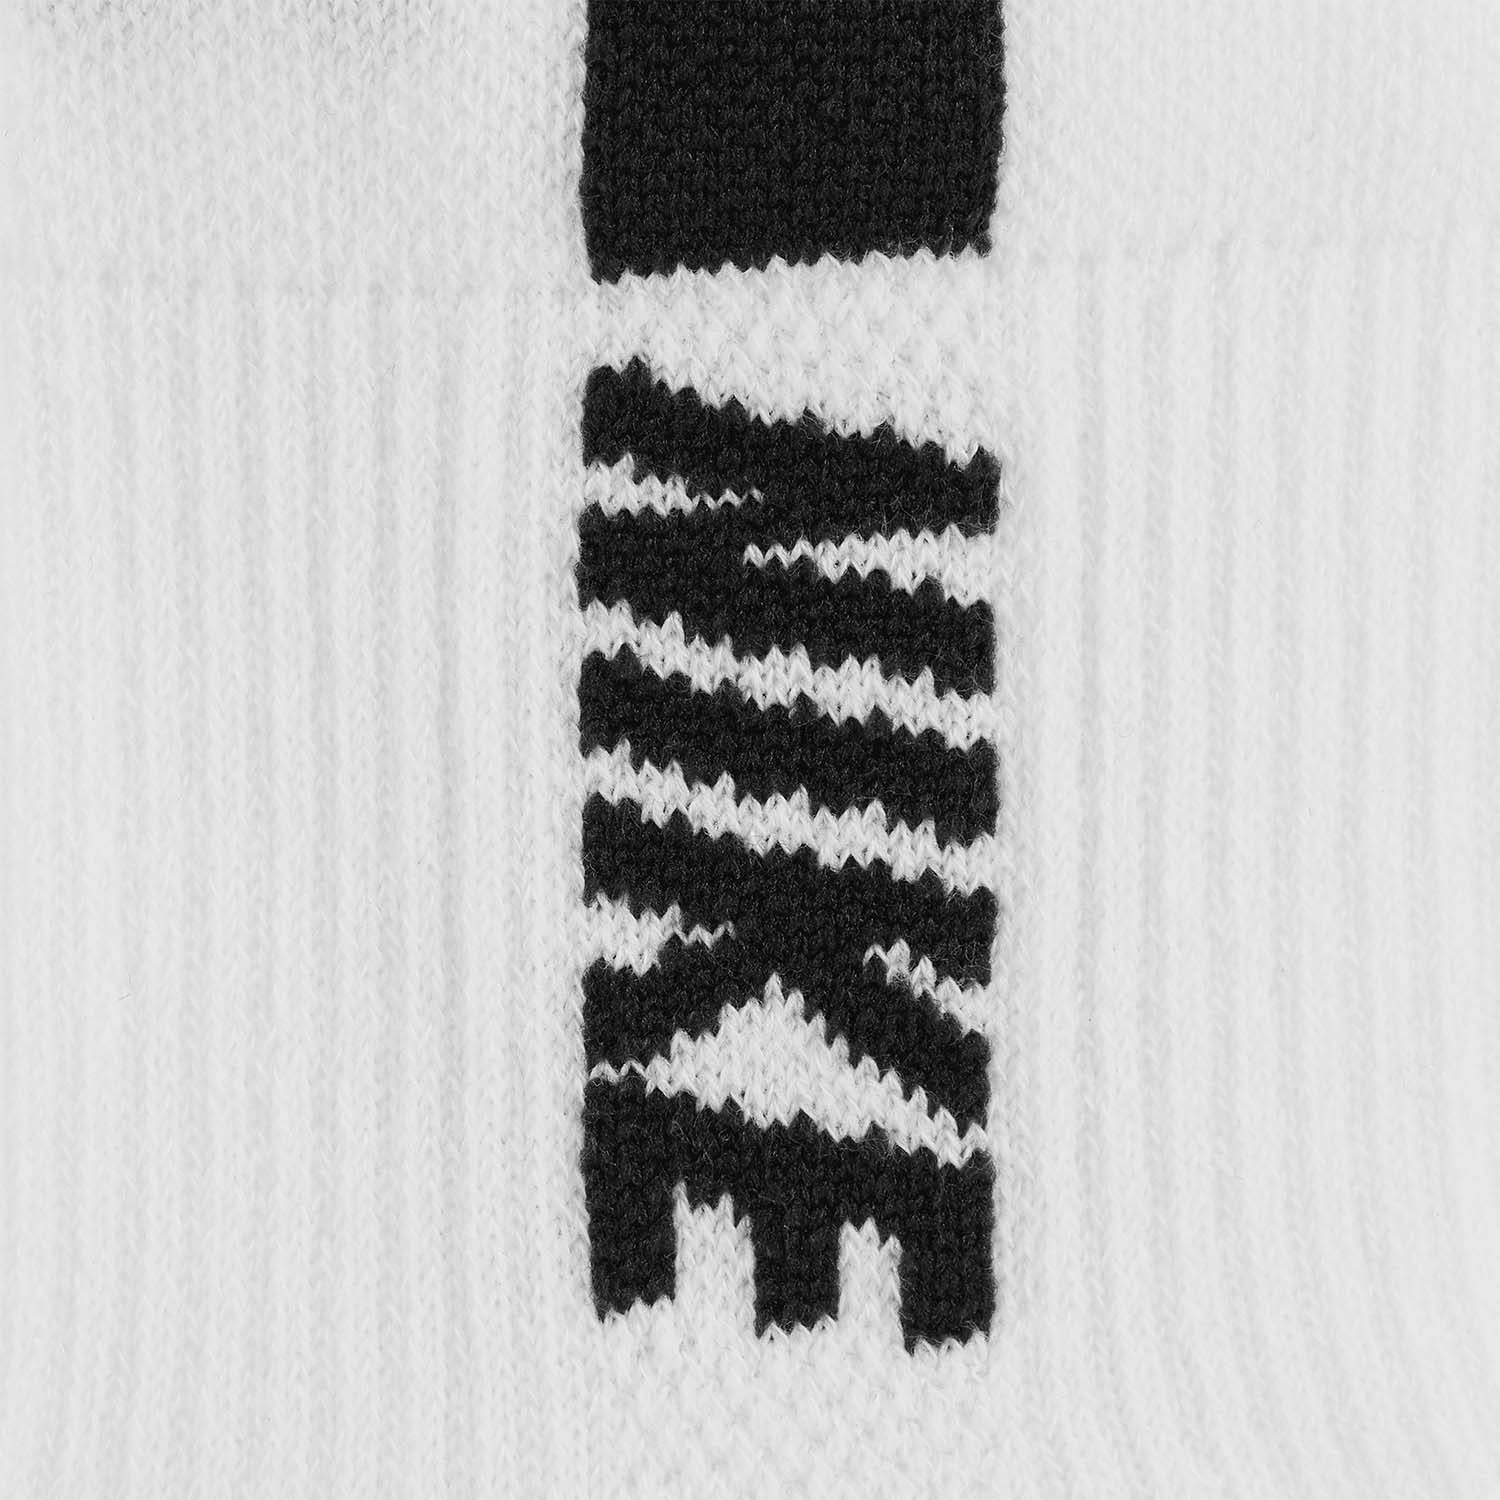 Nike Multiplier x 2 Socks - White/Black